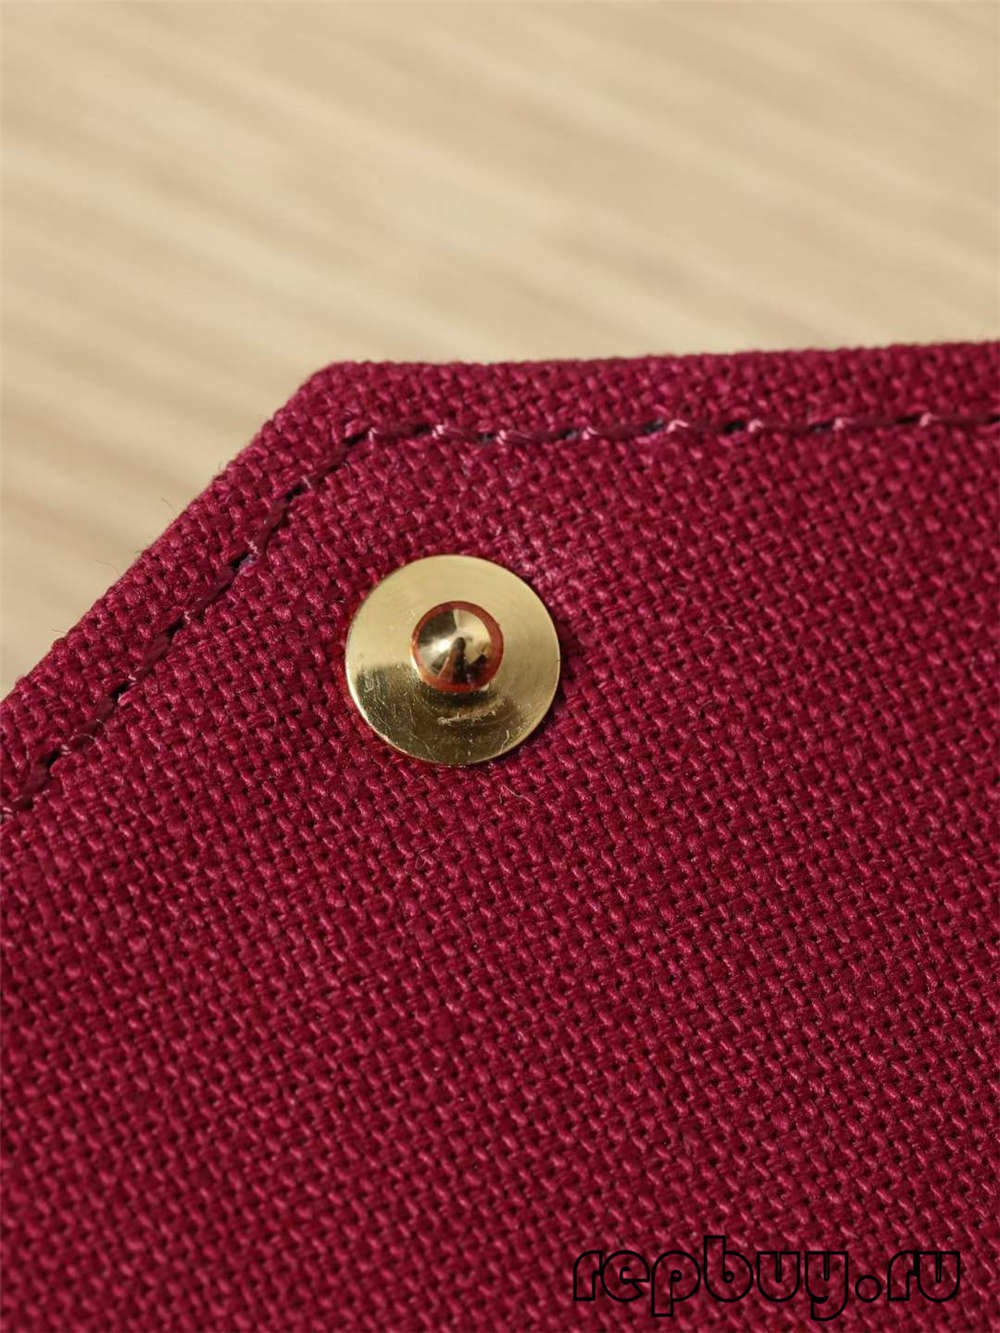 Louis Vuitton POCHETTE FÉLICIE vysokokvalitné repliky tašiek（2022 najnovšie）-najlepšia kvalita falošných tašiek Louis Vuitton Online obchod, replika značkovej tašky ru